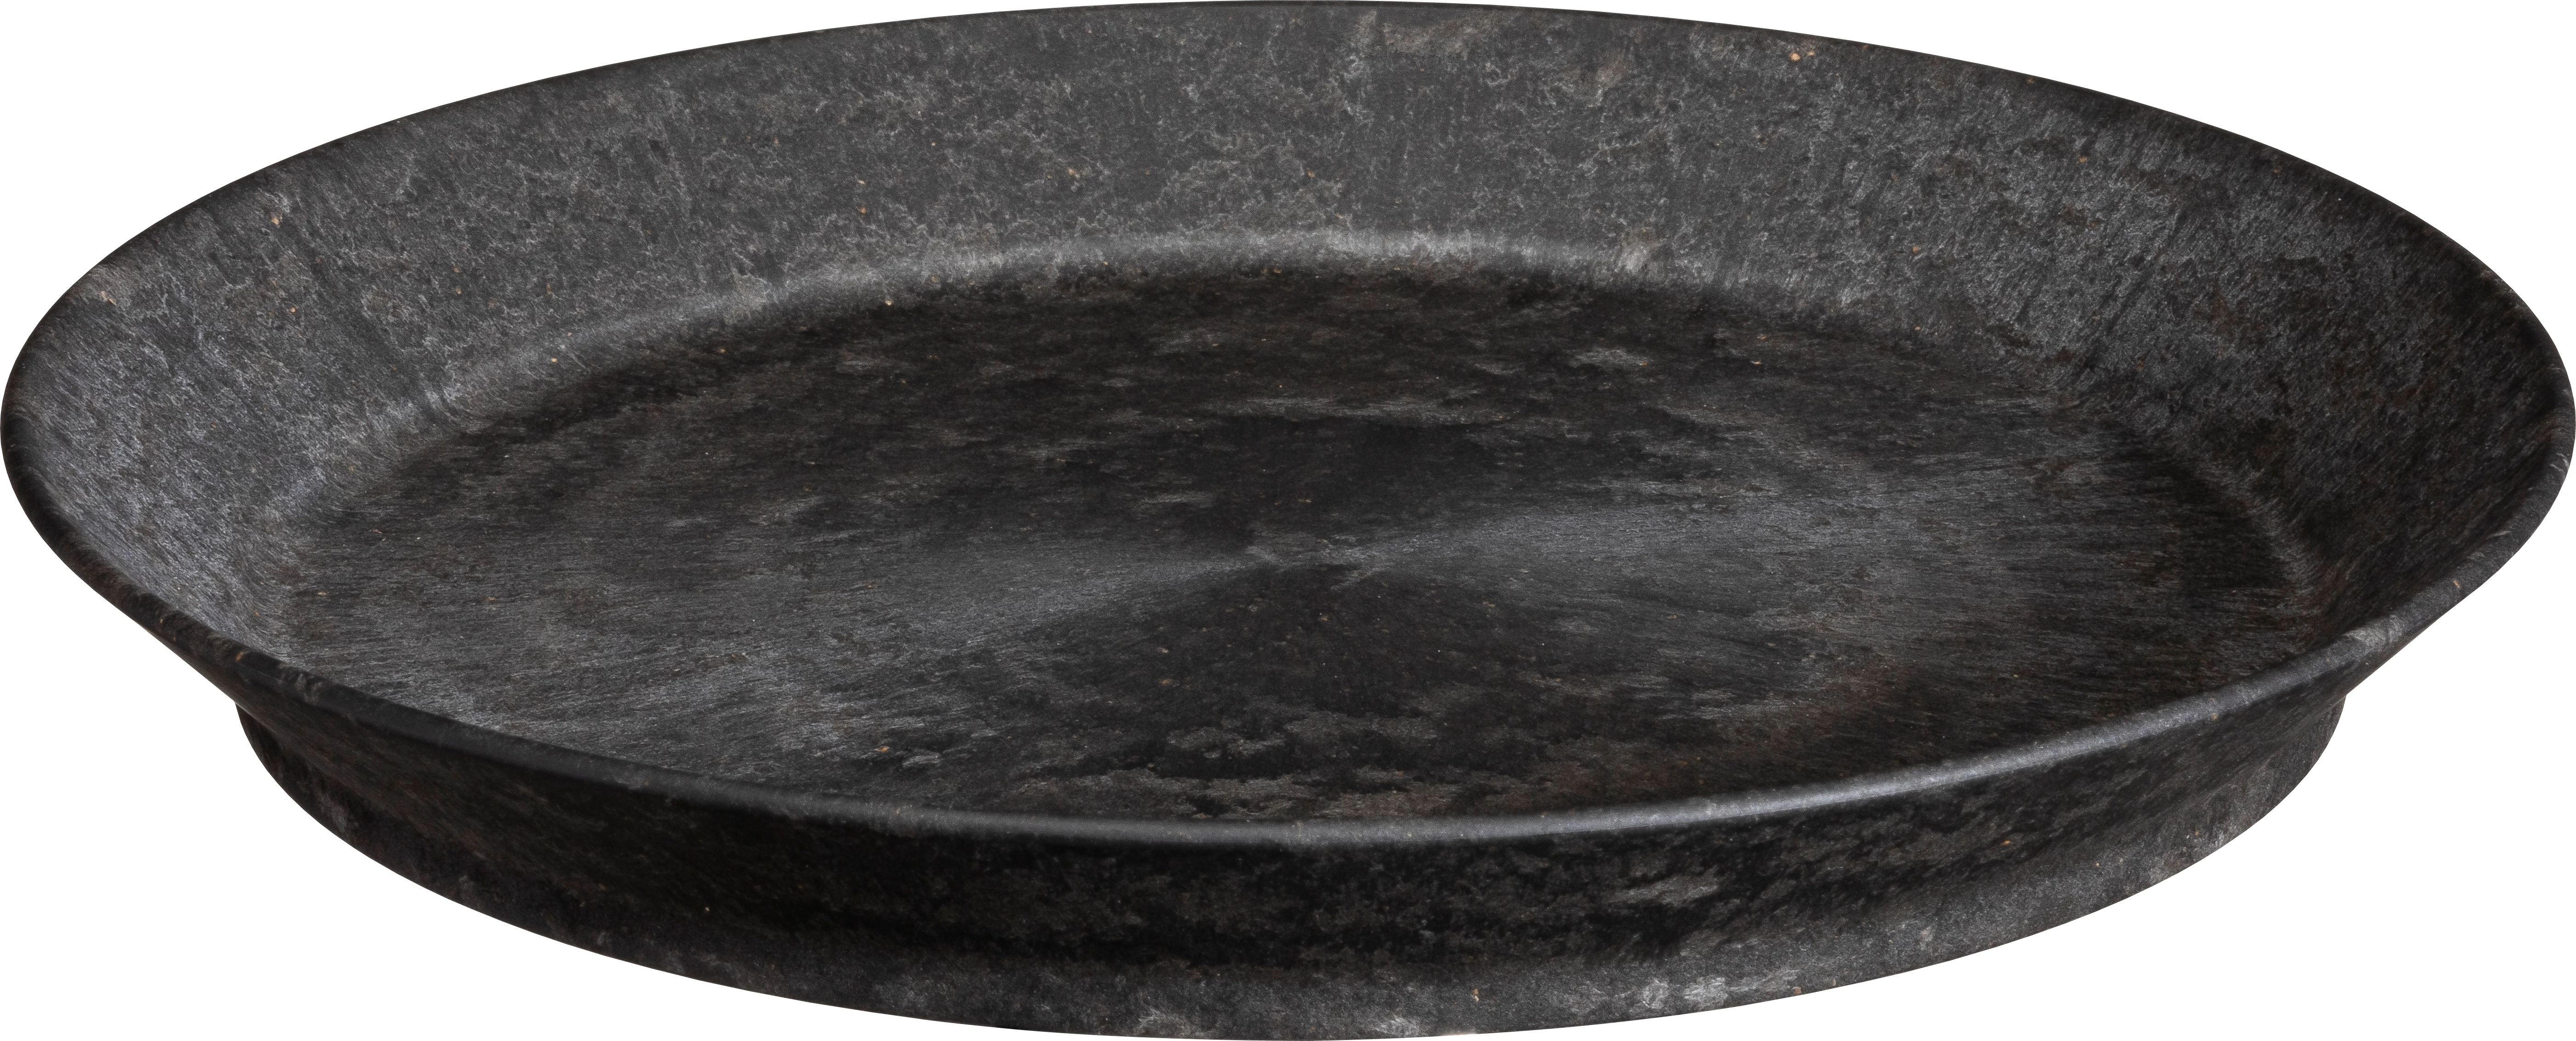 Luups tallerken uden fane, sort, ø25 cm